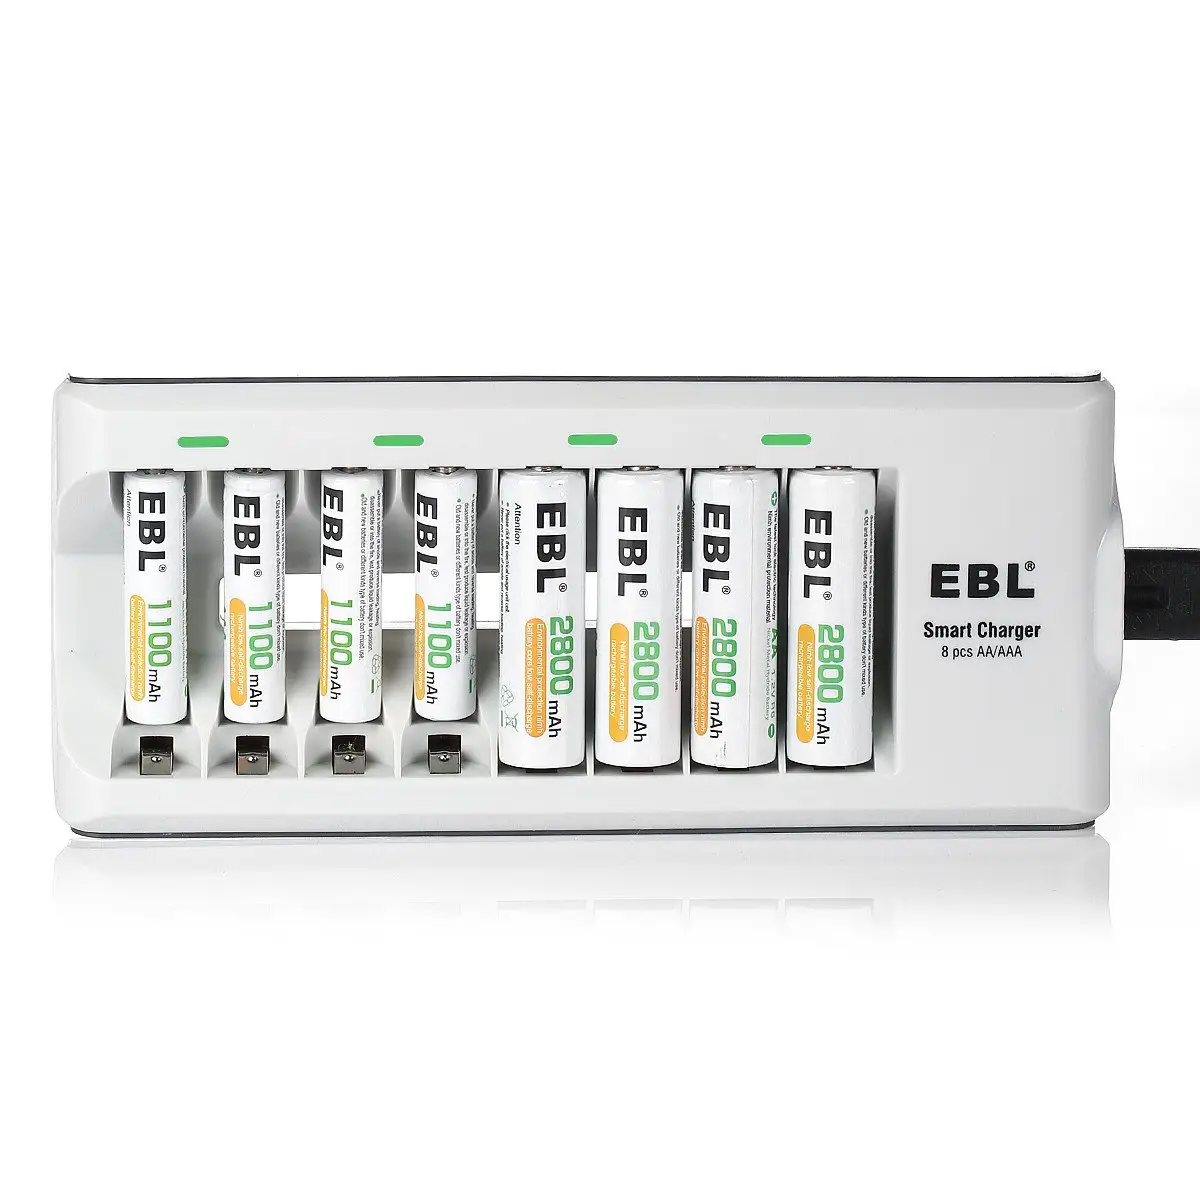 EBL 8Bay बैटरी चार्जर ए. ए. 2800mAh बैटरी एएए के साथ लंबे समय तक चलने रिचार्जेबल बैटरी